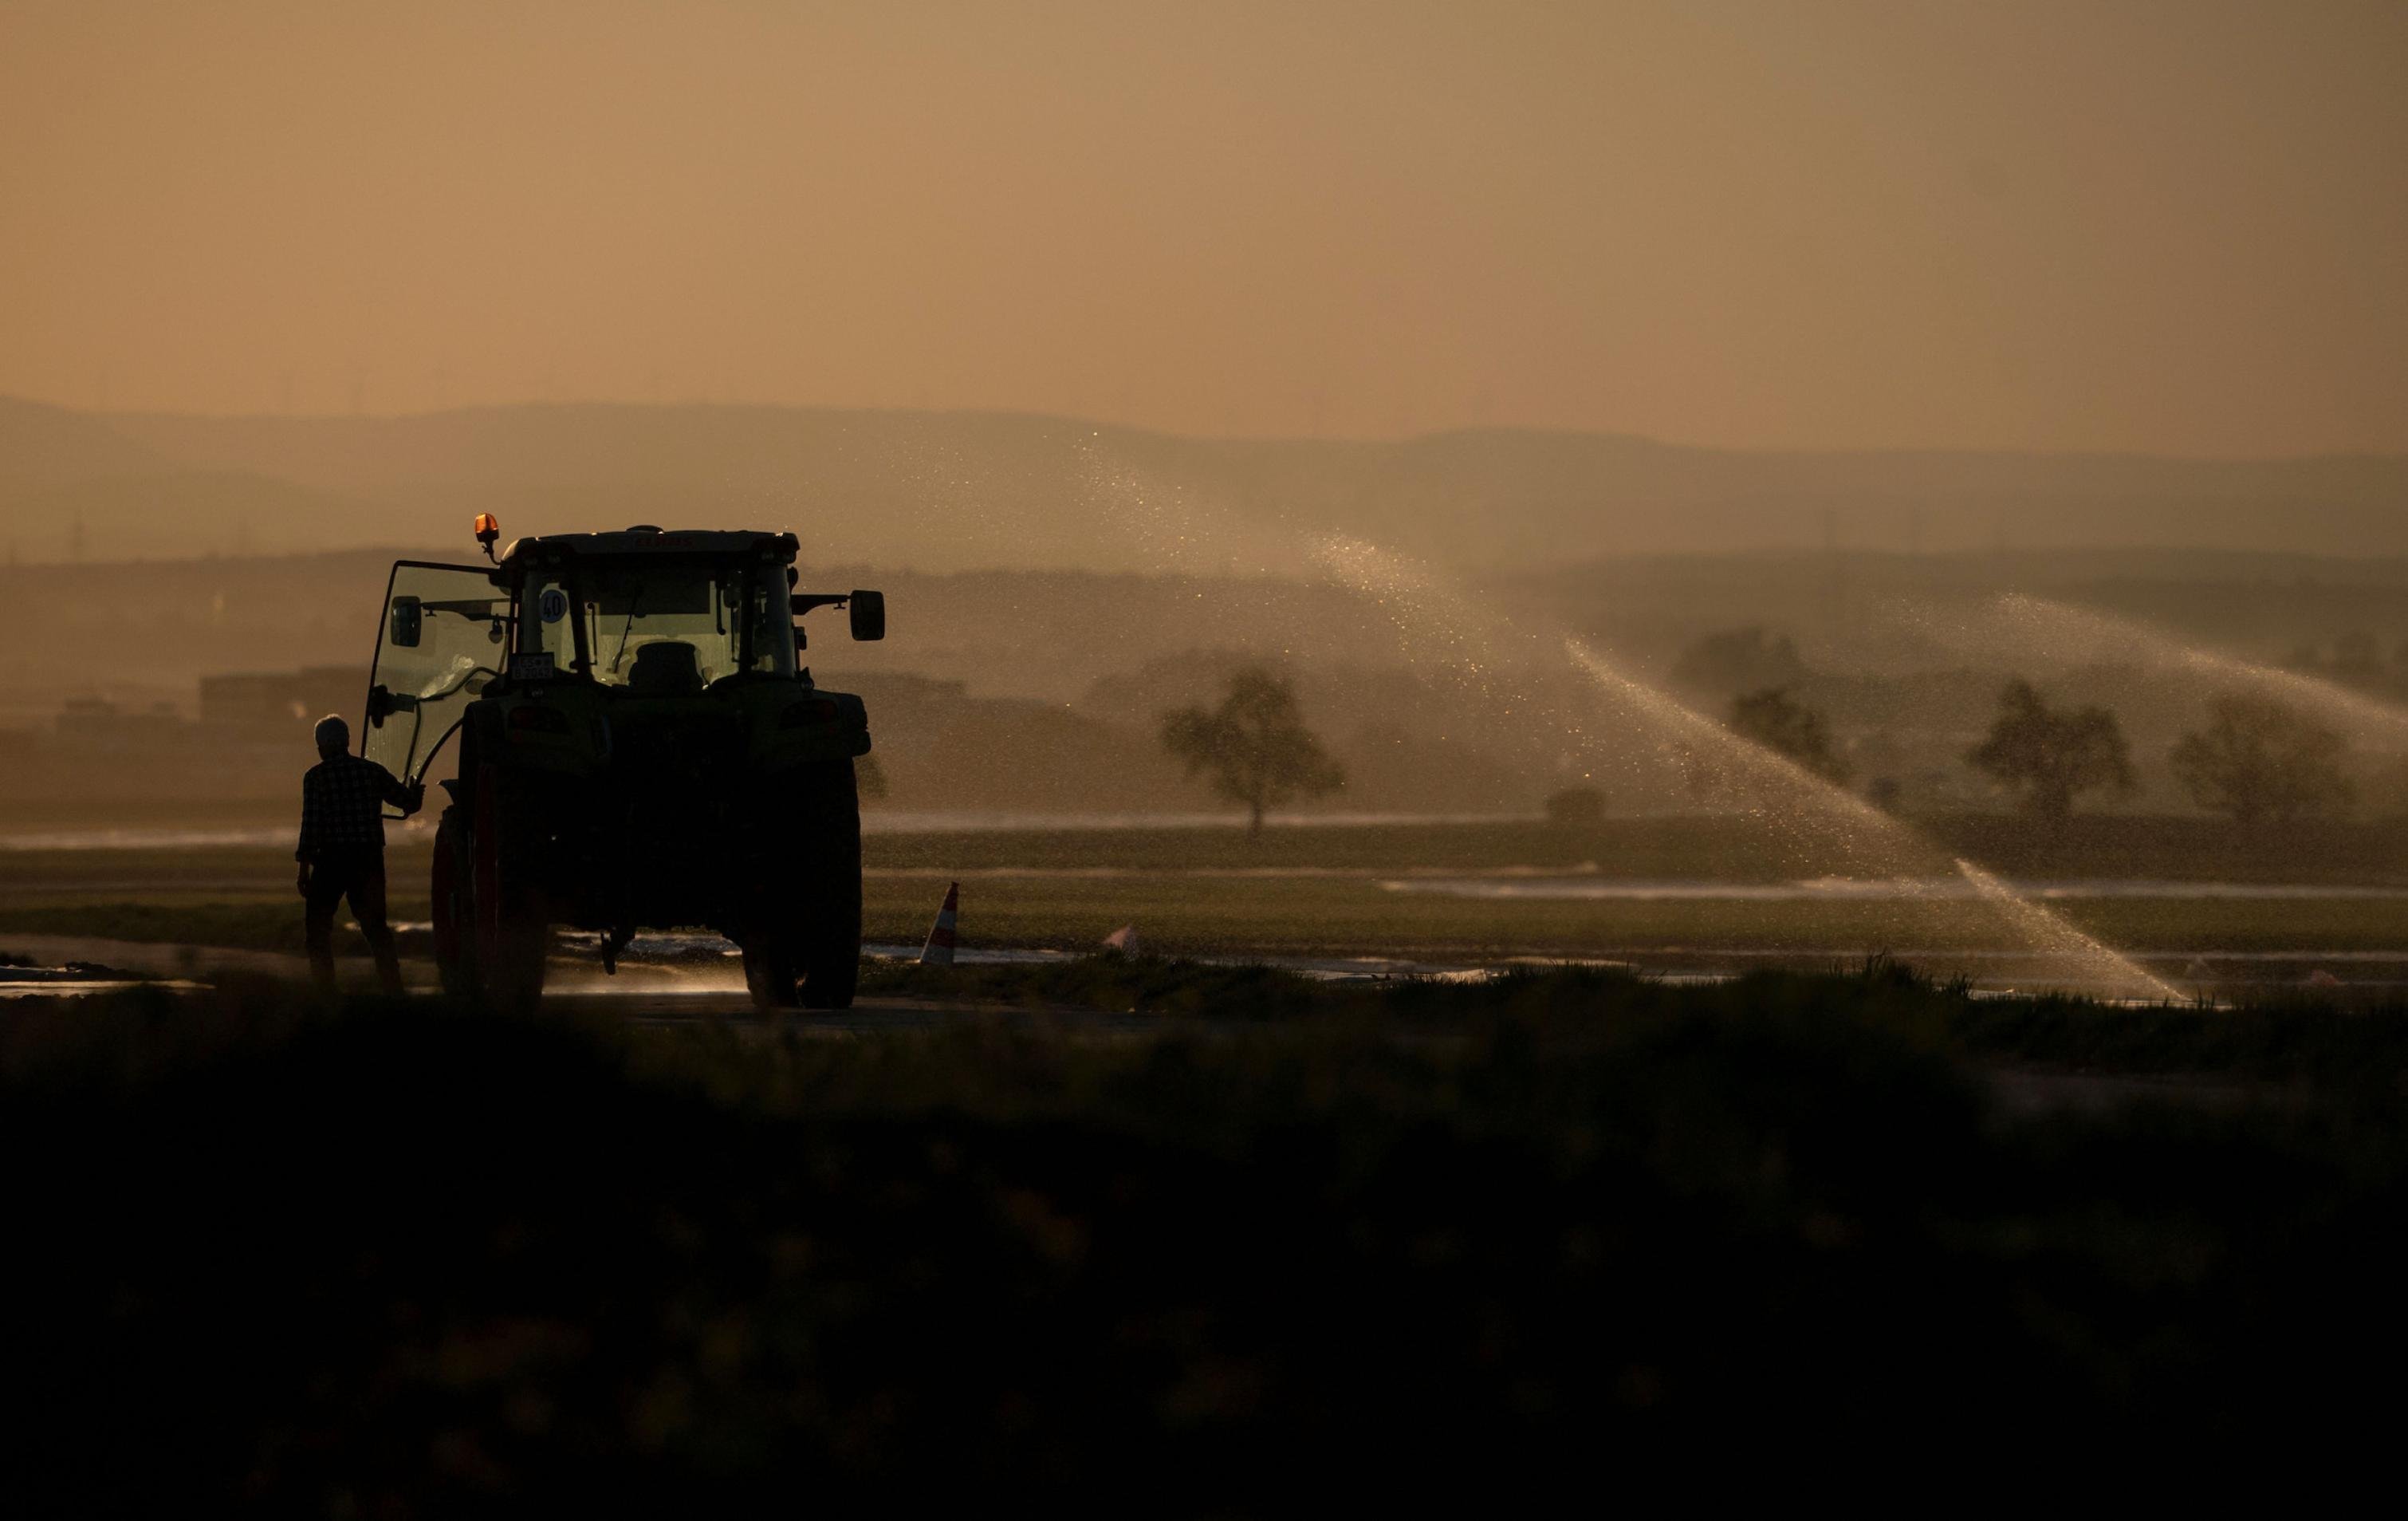 Ein Landwirt steigt neben einem Feld, das bewässert wird, in seinen Traktor ein.